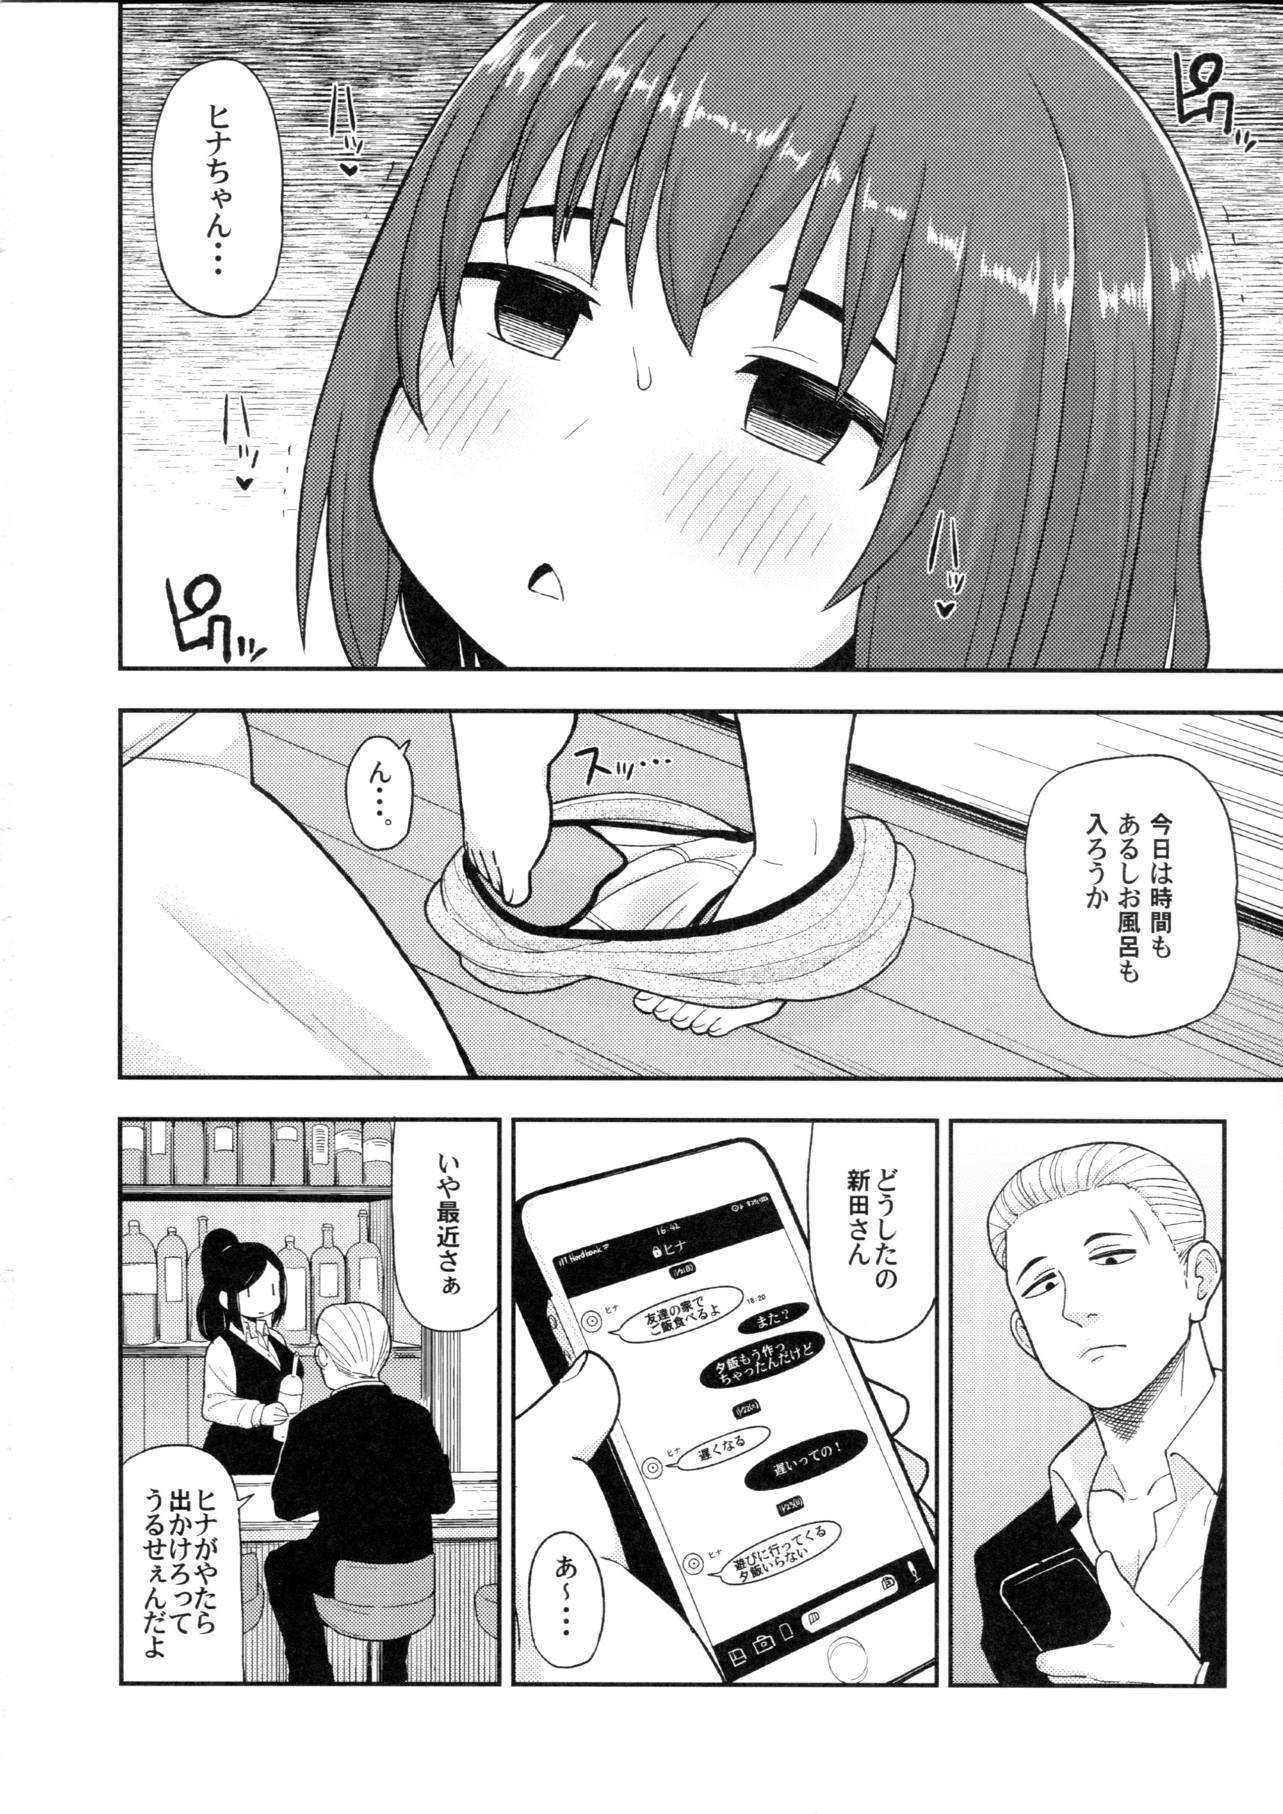 【ヒナまつり】女子中学生のヒナちゃんが新田に内緒でおじさんと援助交際するなんて…。の画像17枚目